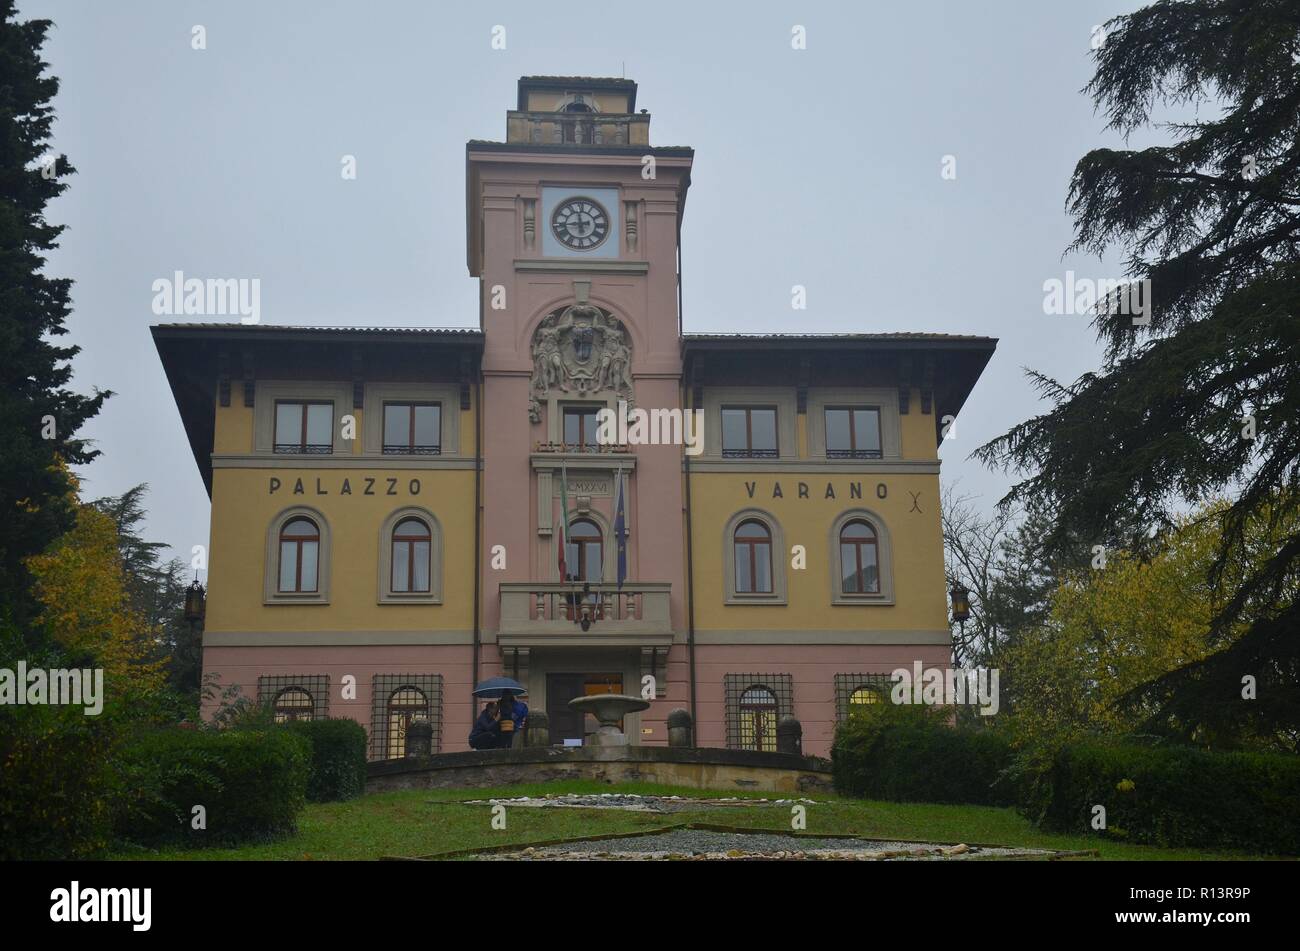 Predappio in Emilia-Romagna, Italien, der Geburtsort Mussolinis, ist geprägt von faschistischer Architektur und Souvenirläden: Rathaus, Palazzo Varano Stock Photo